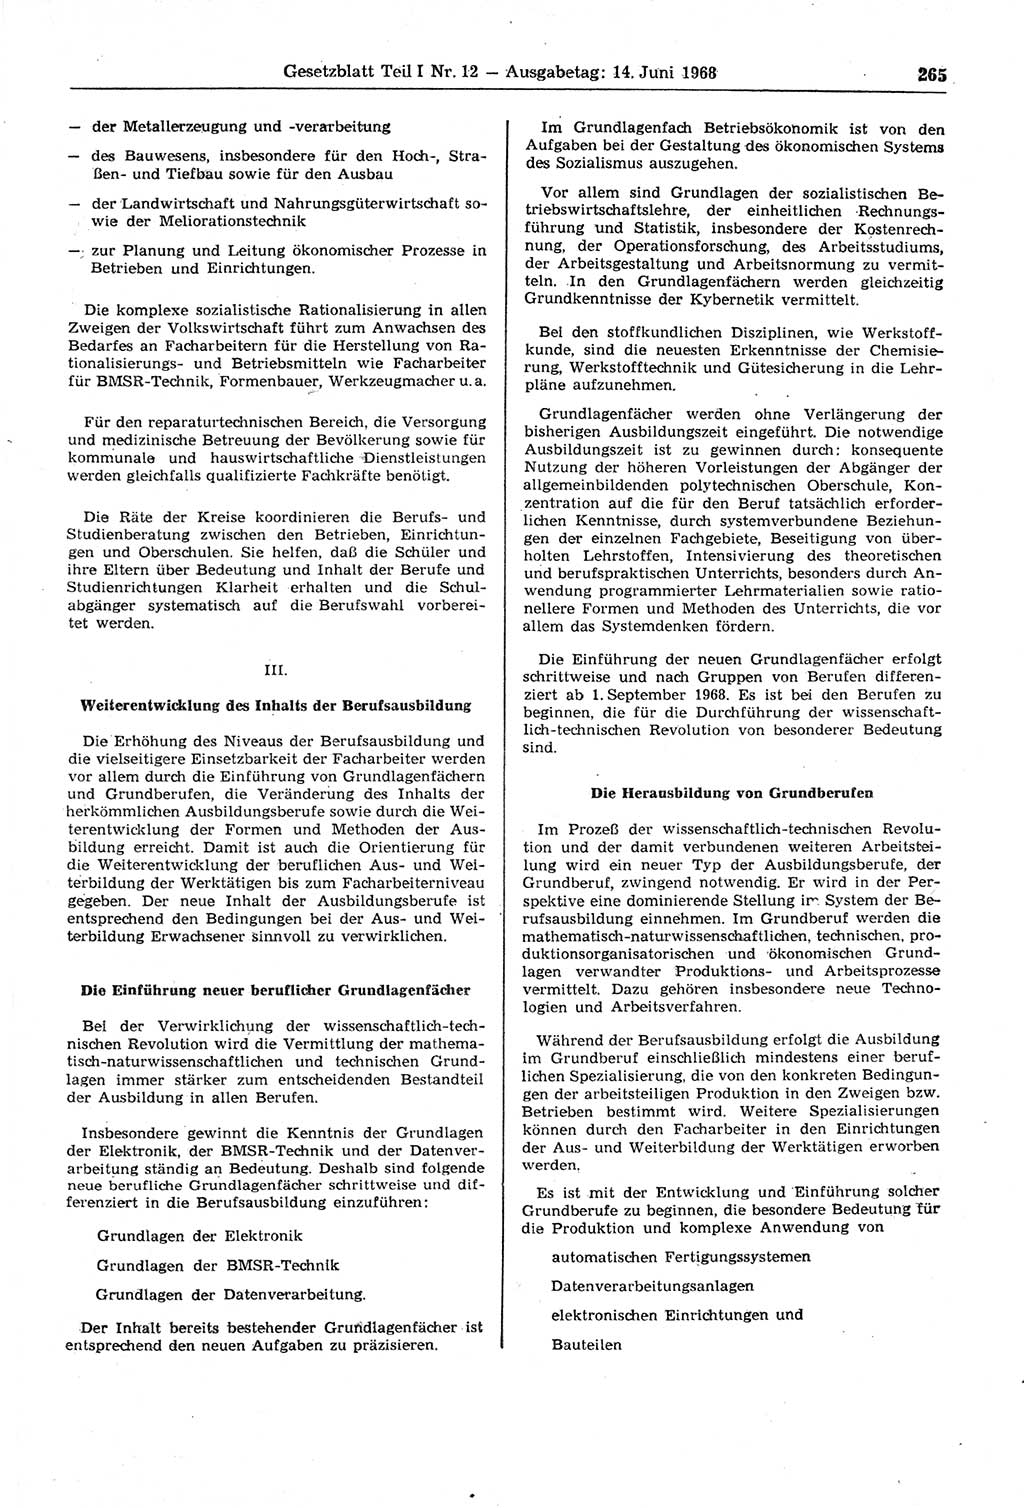 Gesetzblatt (GBl.) der Deutschen Demokratischen Republik (DDR) Teil Ⅰ 1968, Seite 265 (GBl. DDR Ⅰ 1968, S. 265)